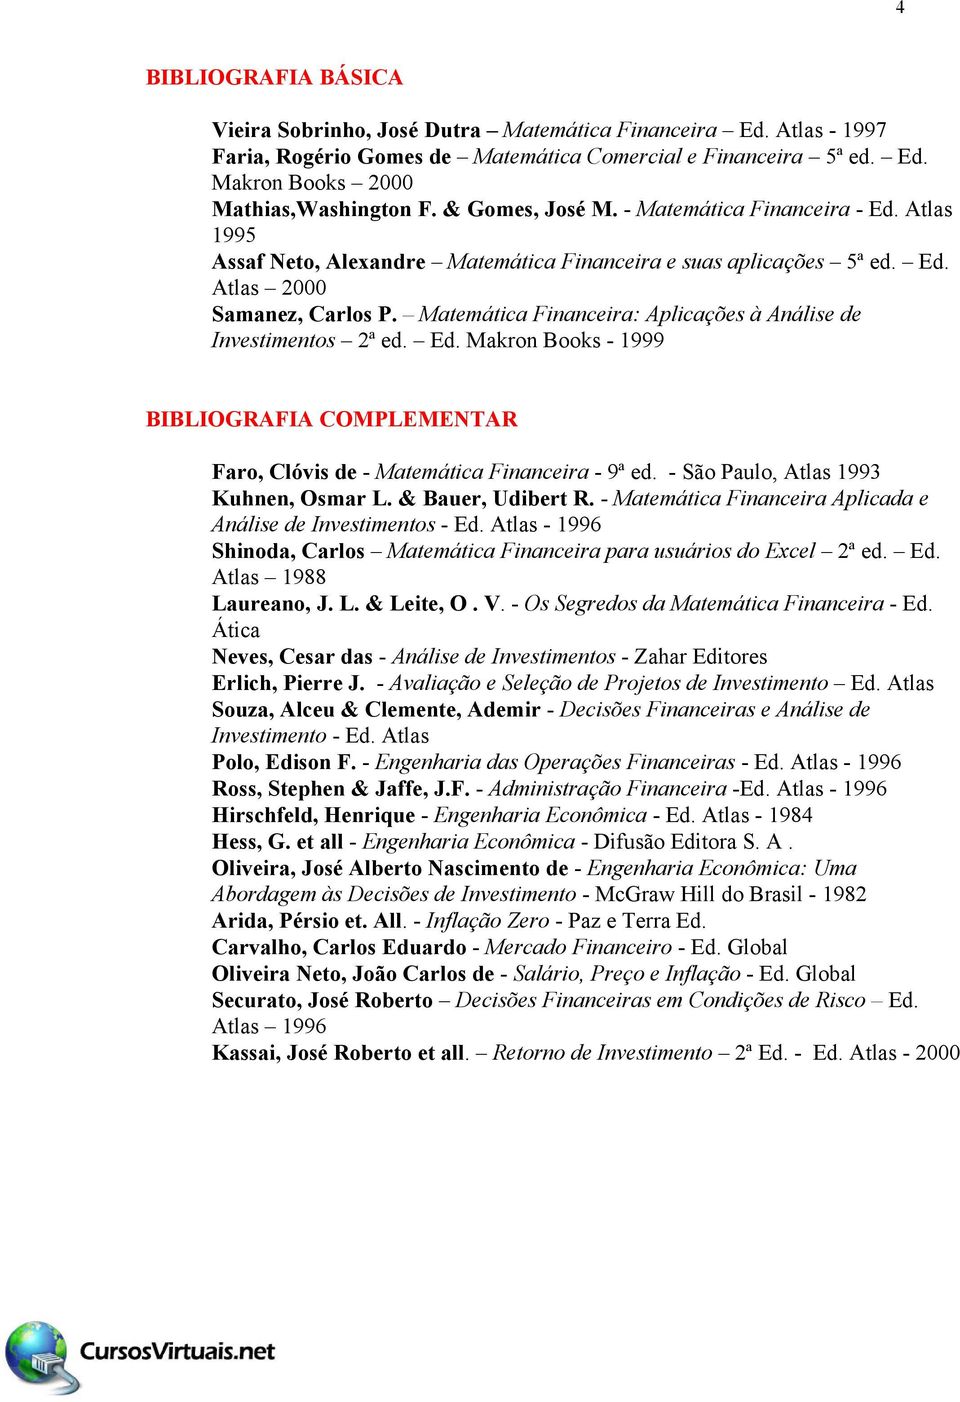 Matemática Financeira: Aplicações à Análise de Investimentos 2ª ed. Ed. Makron Books - 1999 BIBLIOGRAFIA COMPLEMENTAR Faro, Clóvis de - Matemática Financeira - 9ª ed.